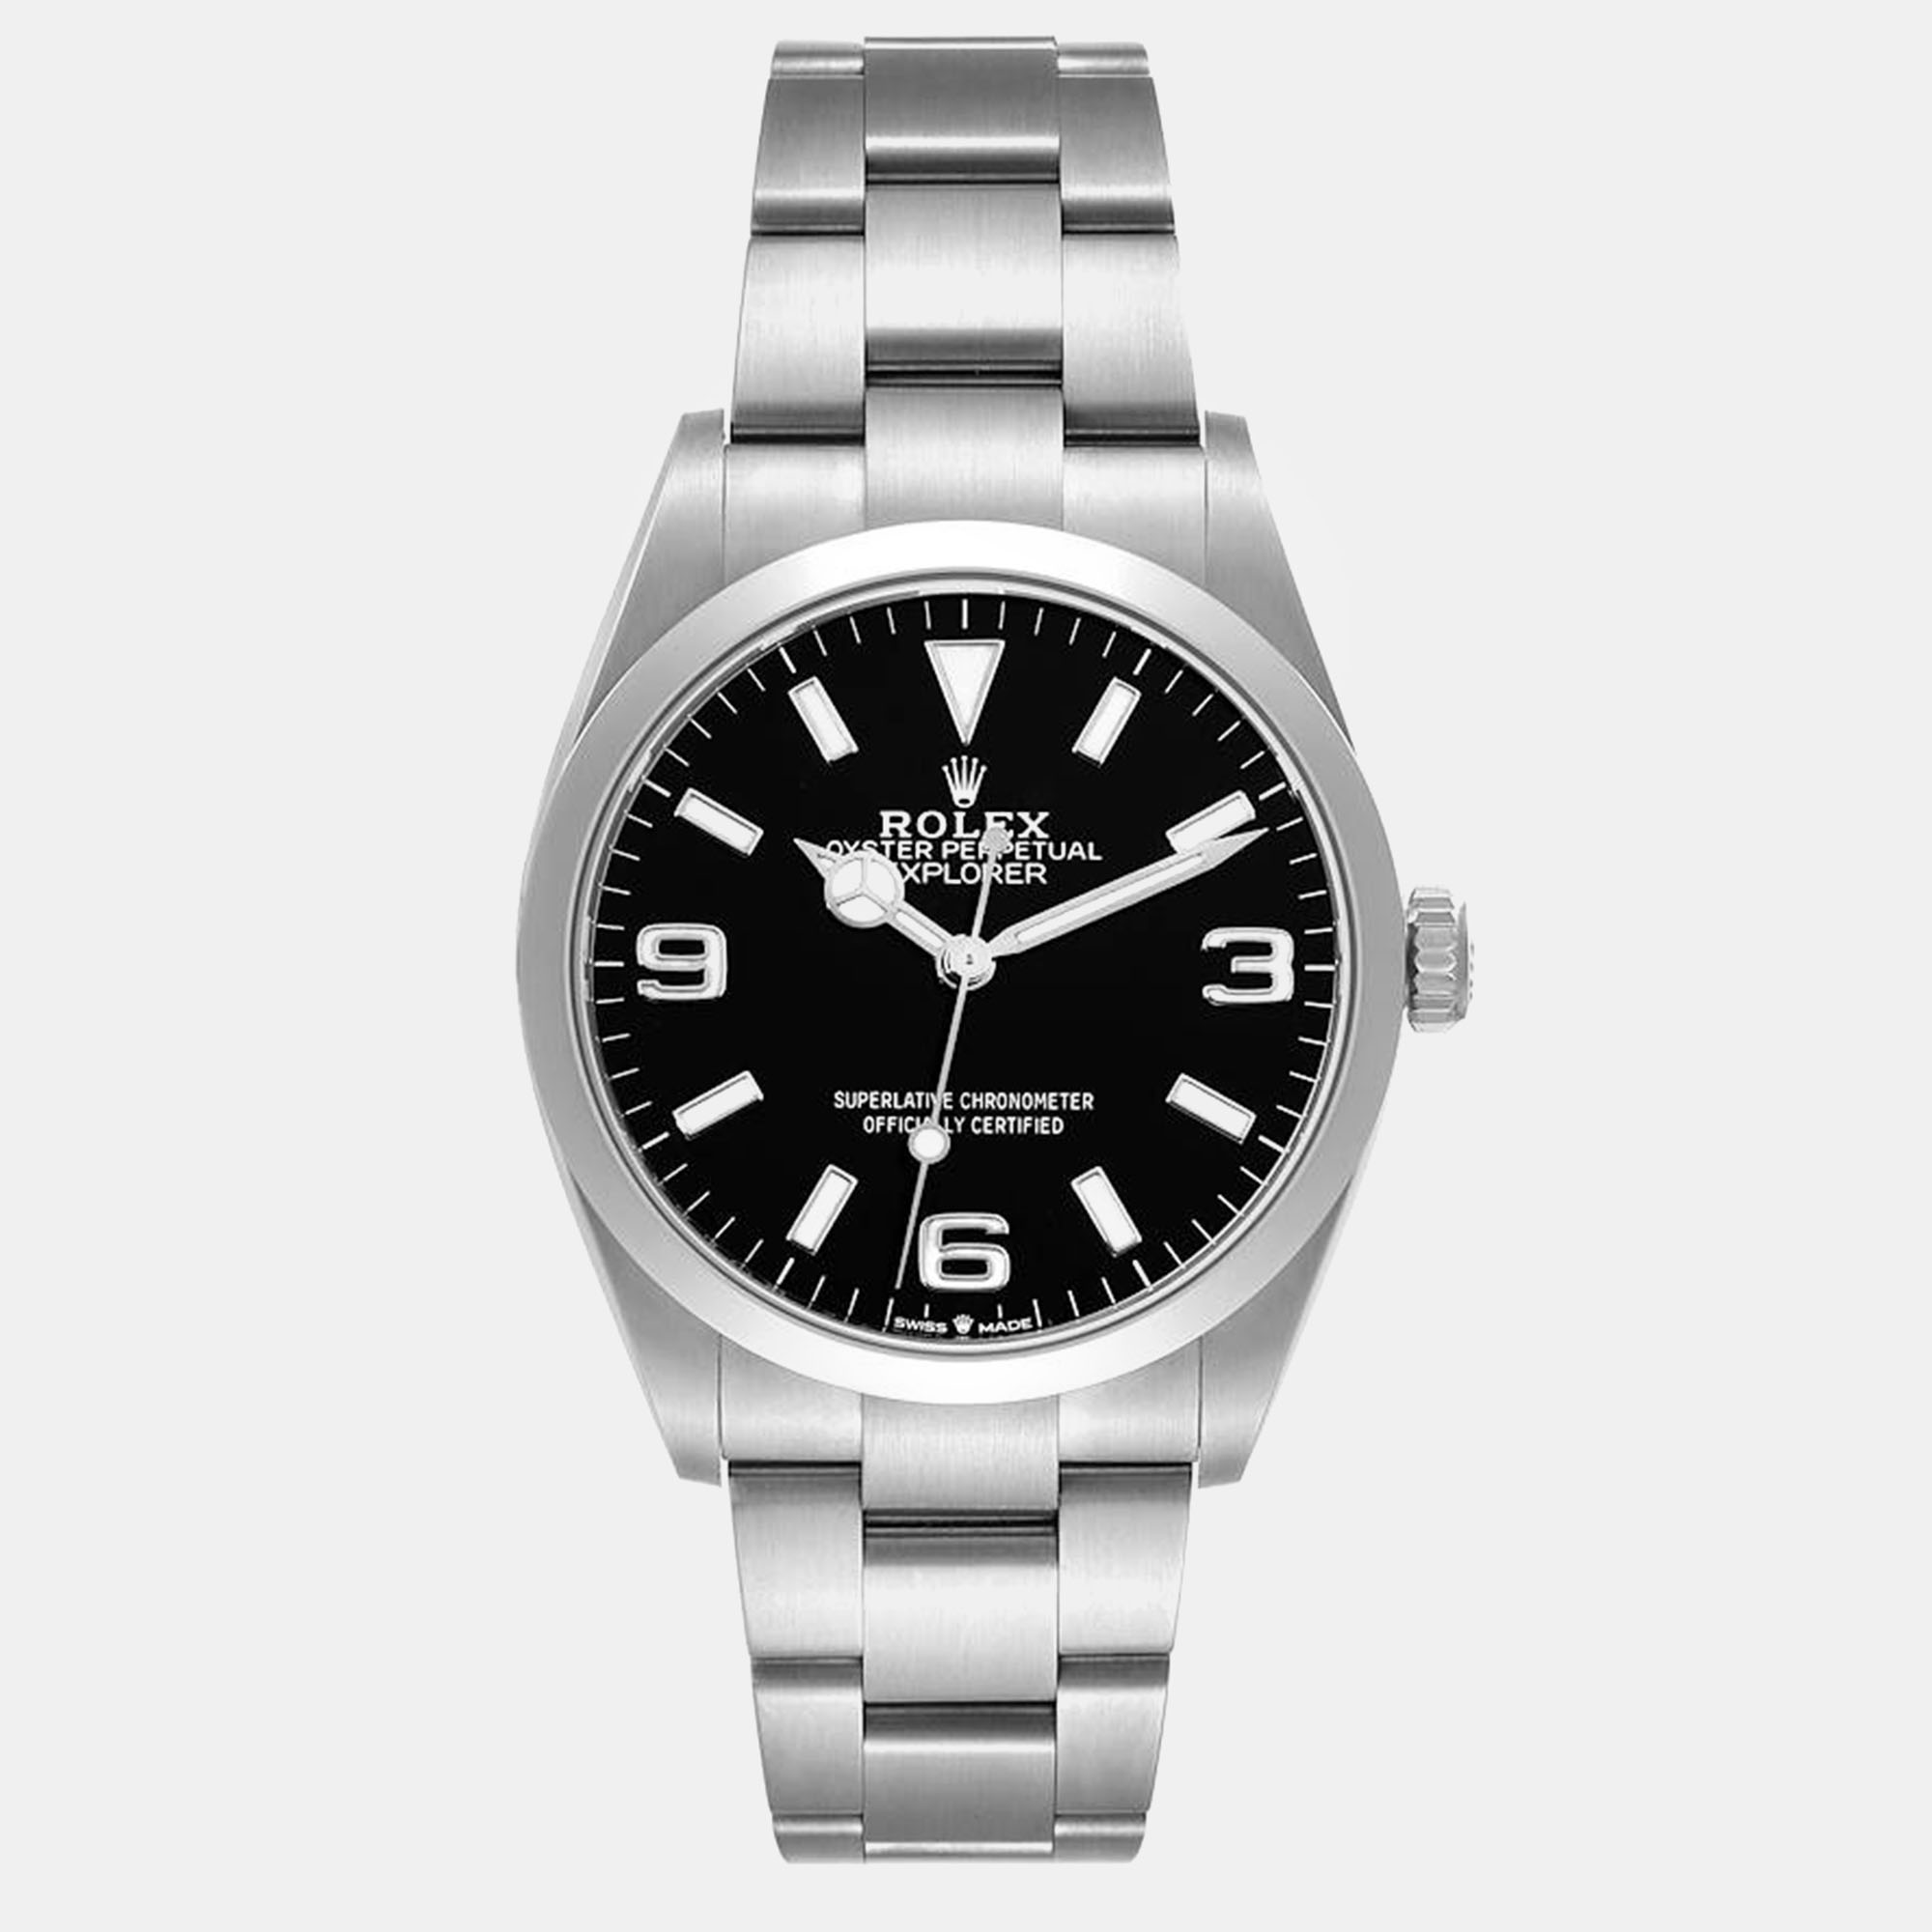 Rolex explorer i black dial steel men's watch 36 mm